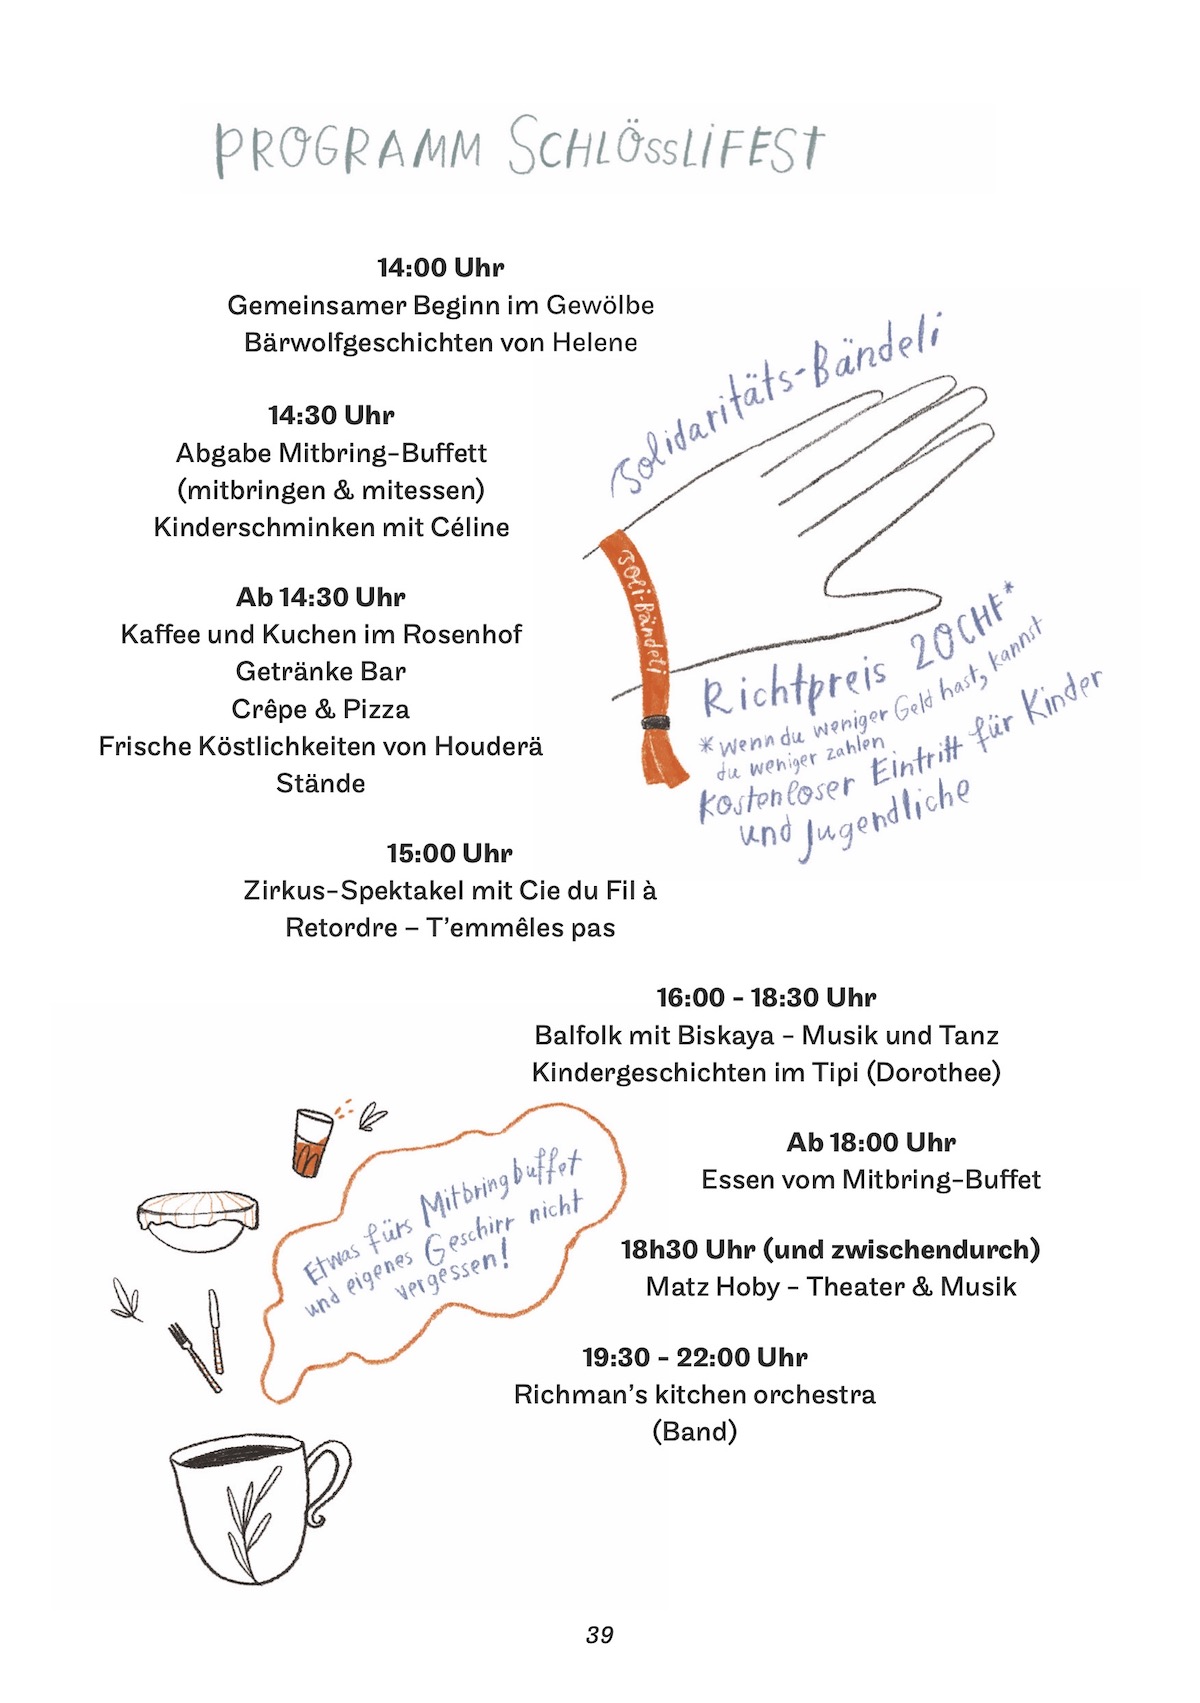 Programm Schlössli Fest 2024</p>
<p>14:00 Uhr<br />
Gemeinsamer Beginn im Gewölbe<br />
Bärwolfgeschichten von Helene</p>
<p>14:30 Uhr<br />
Abgabe Mitbring-Buffett (mitbringen & mitessen)<br />
Kinderschminken mit Céline</p>
<p>Ab 14:30 Uhr<br />
Kaffee und Kuchen im Rosenhof<br />
Getränke Bar<br />
Crêpe & Pizza<br />
Frische Köstlichkeiten von Houderä<br />
Stände</p>
<p>15:00 Uhr<br />
Zirkus-Spektakel mit Cie du Fil à Retordre – T’emmêles pas</p>
<p>16:00 - 18:30 Uhr<br />
Balfolk mit Biskaya - Musik und Tanz<br />
Kindergeschichten im Tipi (Dorothee)</p>
<p>Ab 18:00 Uhr<br />
Essen vom Mitbring-Buffet</p>
<p>18h30 Uhr (und zwischendurch)<br />
Matz Hoby - Theater & Musik</p>
<p>19:30 - 22:00 Uhr<br />
Richman’s kitchen orchestra (Band)</p>
<p>Solidaritäts-Bändeli Richtpreis 20 CHF*<br />
*wenn du wenig Geld hast, kannst du weniger zahlen<br />
Kostenloser Eintritt für Kinder und Jugendliche</p>
<p>Etwas fürs Mitbring-Buffet und eigenes Geschirr nicht vergessen!